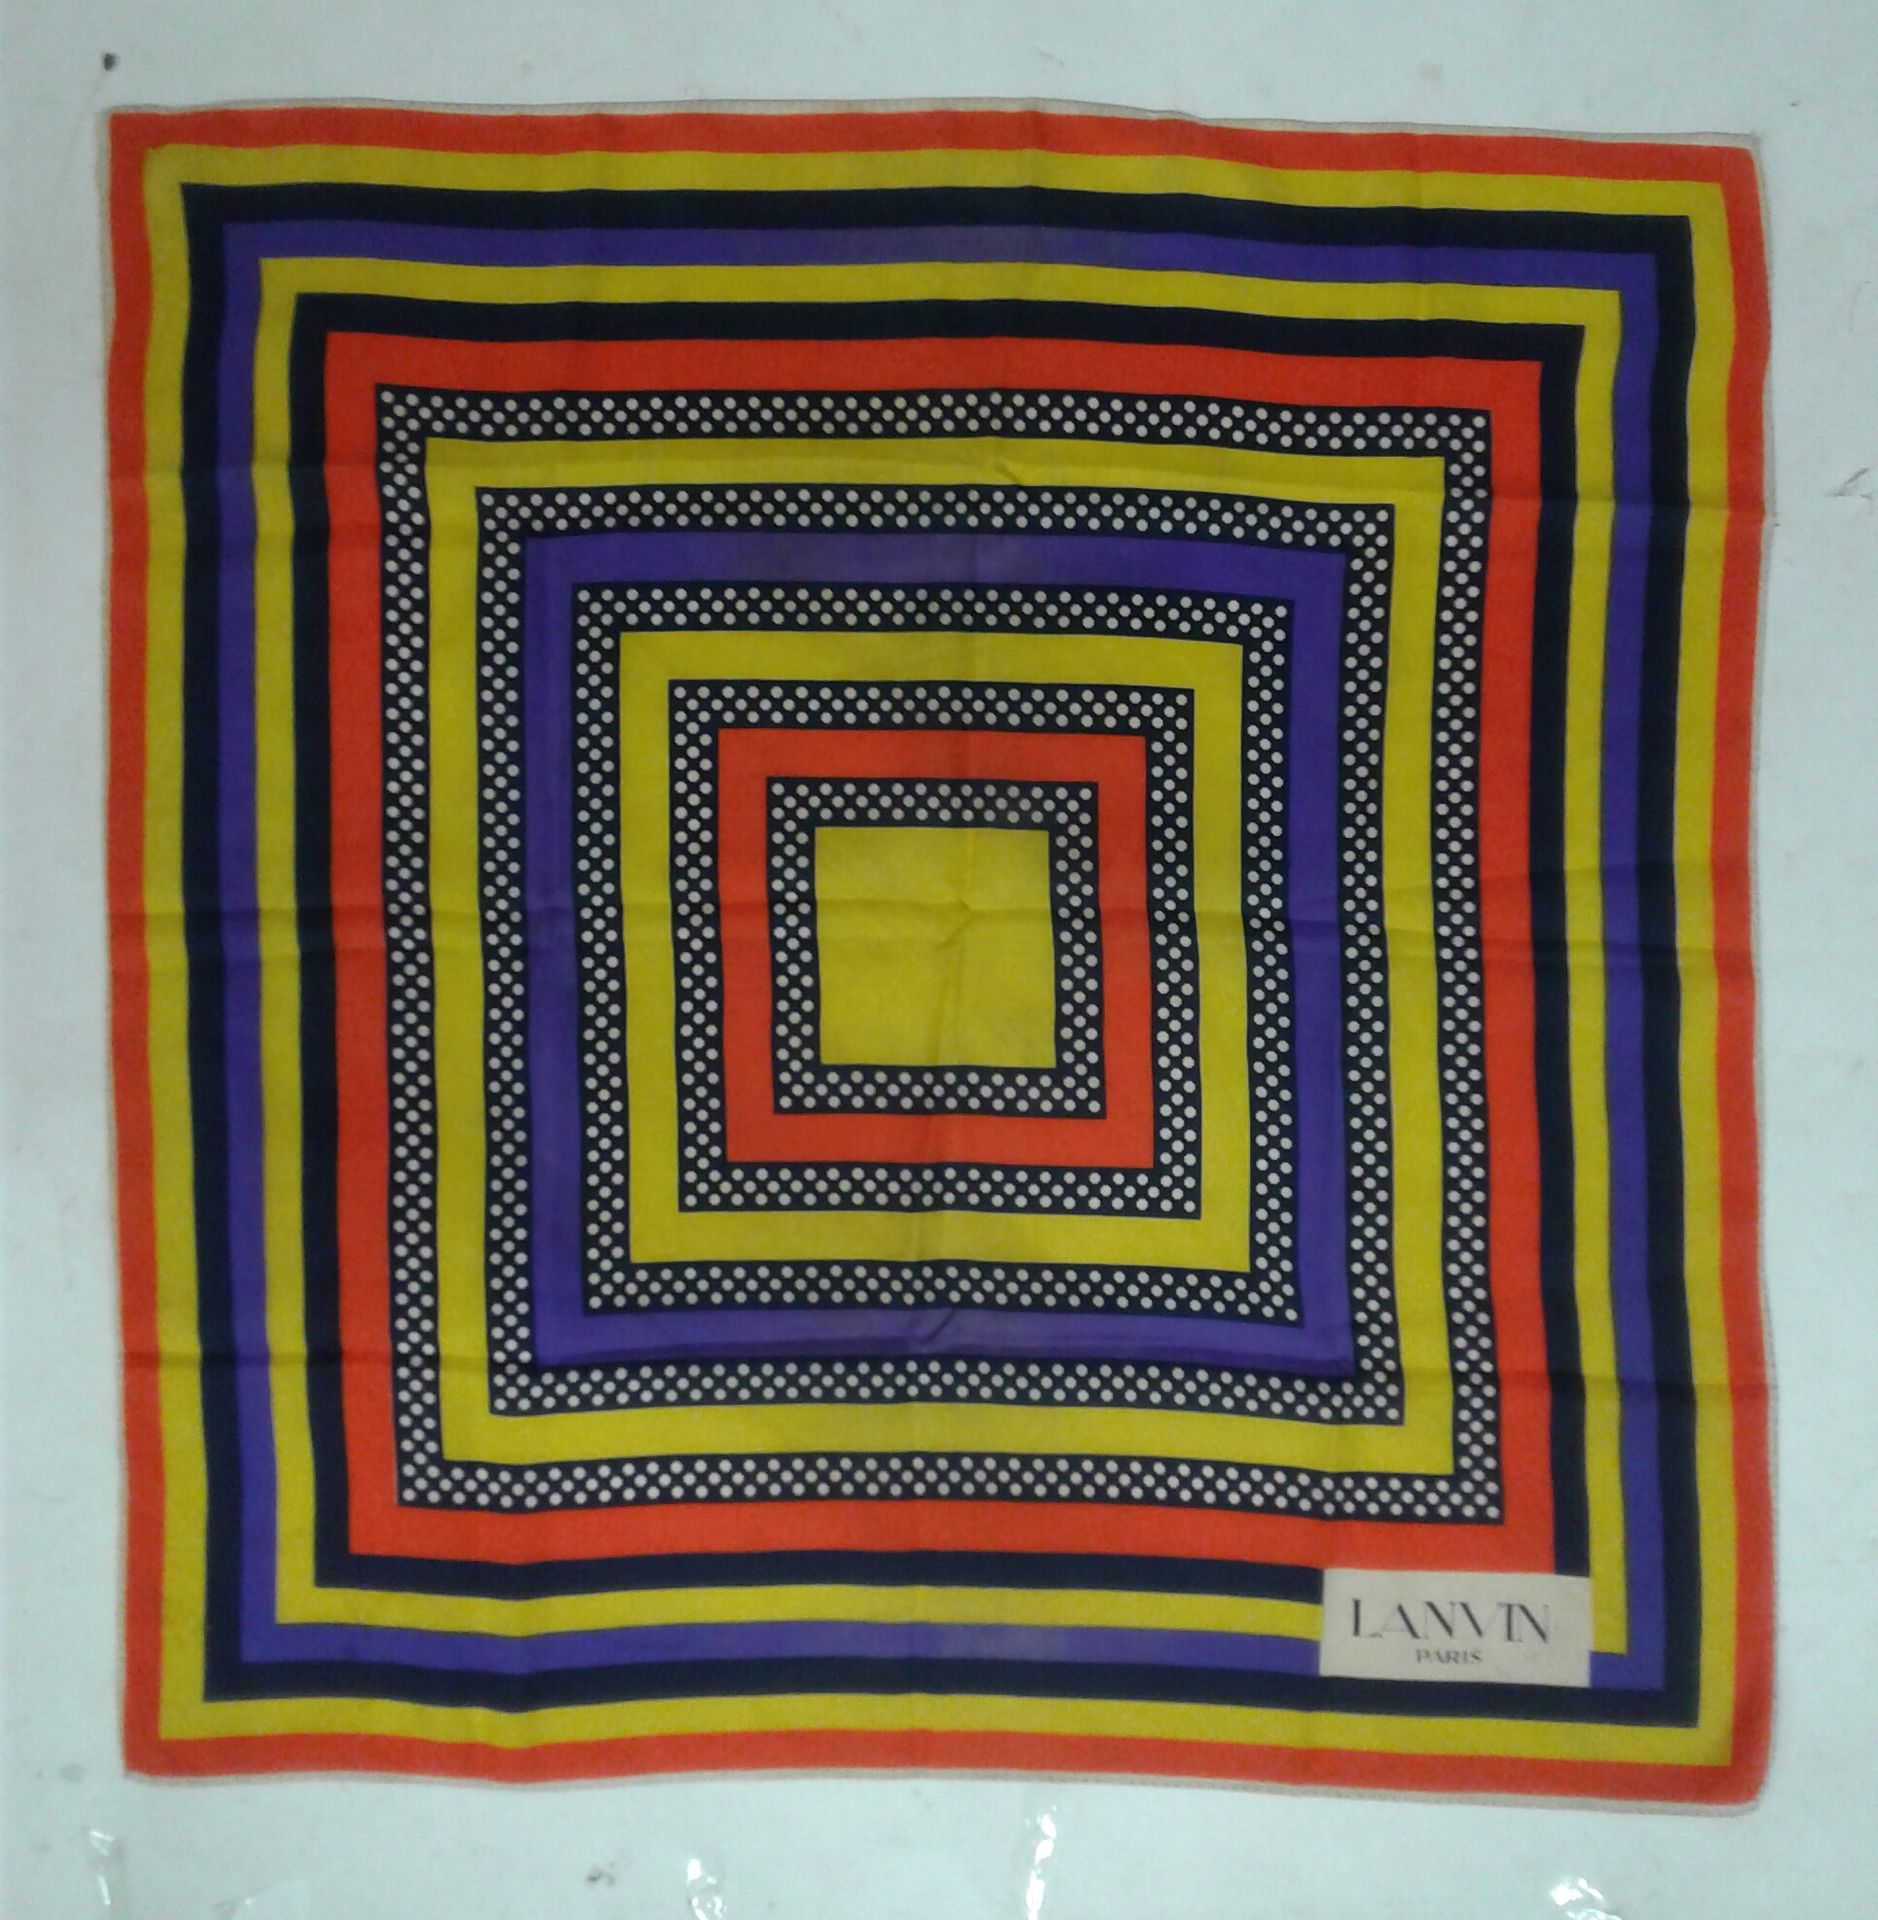 Null LANVIN, cuadrado de seda, marco naranja, amarillo, negro y azul. 67X67